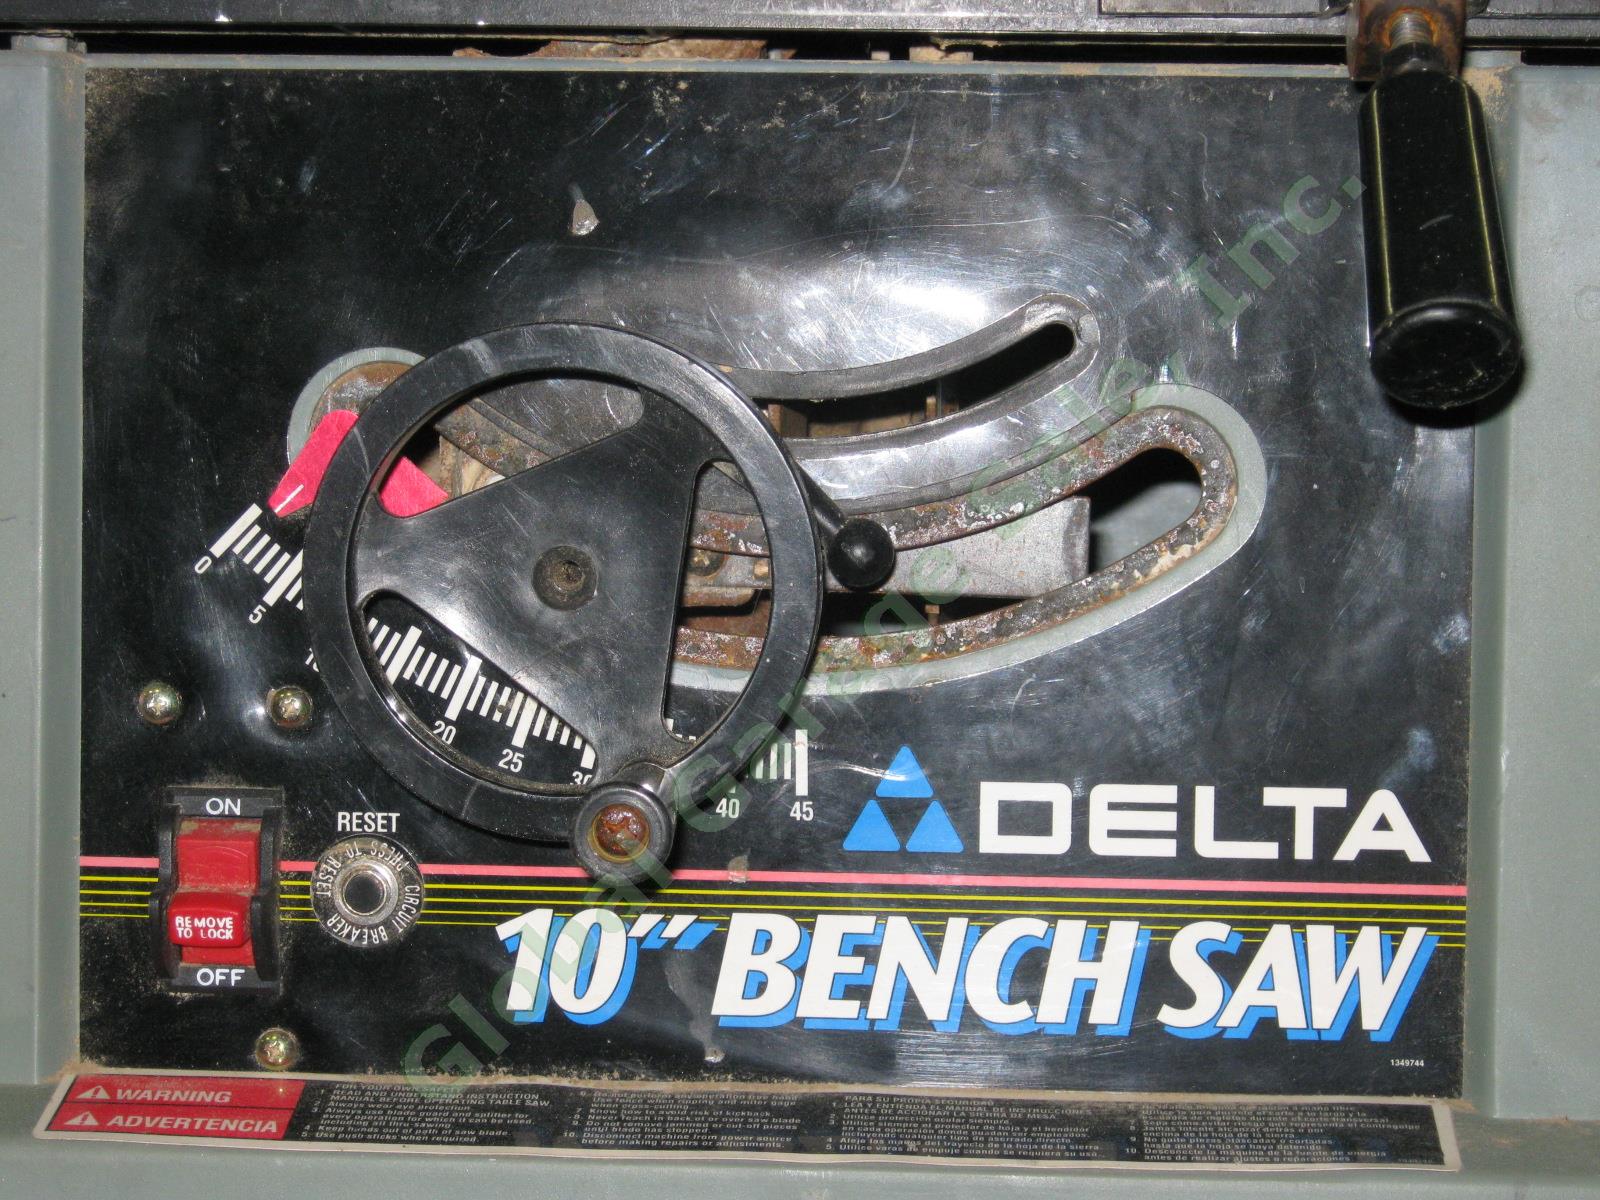 Delta 10" Bench Saw 36-540 Type 2 K9918 120V 13A 60Hz 1 Phase 1